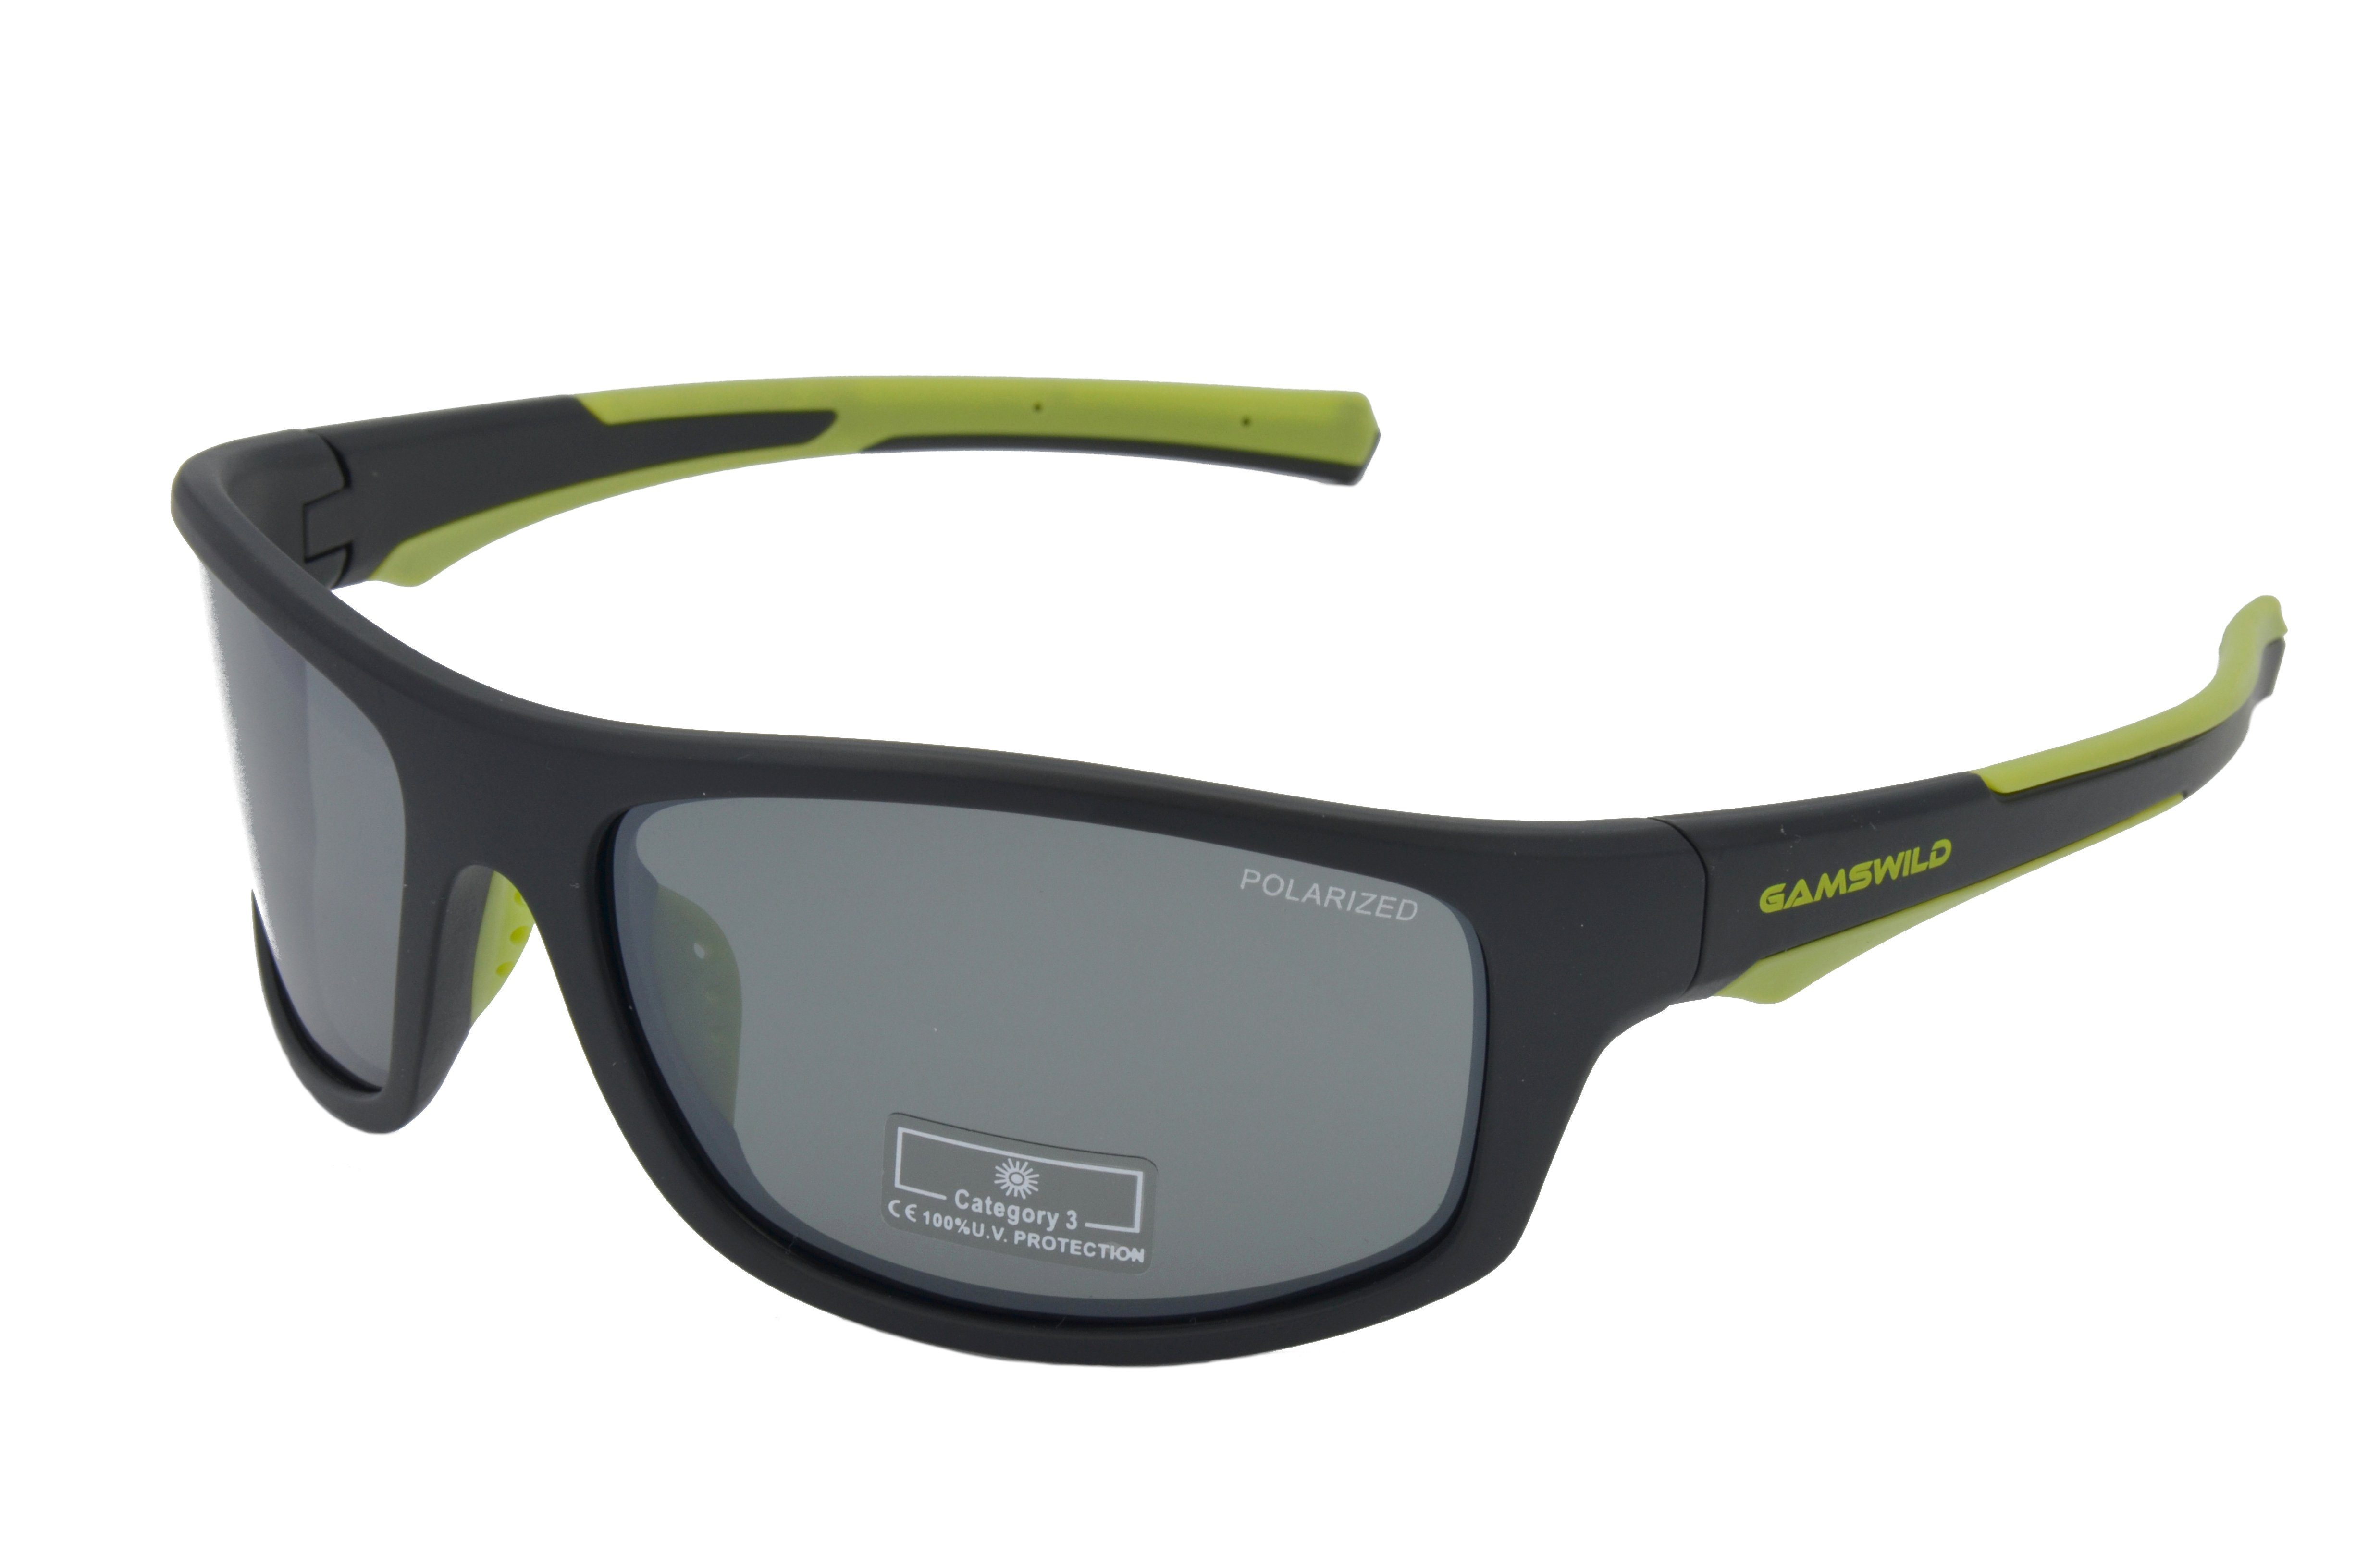 Gamswild Sportbrille WS2238 Sonnenbrille Damen Herren Fahrradbrille Skibrille Unisex, TR90 / polarisiert, grau, blau, schwarz-rot, -orange, -grün schwarz-grün